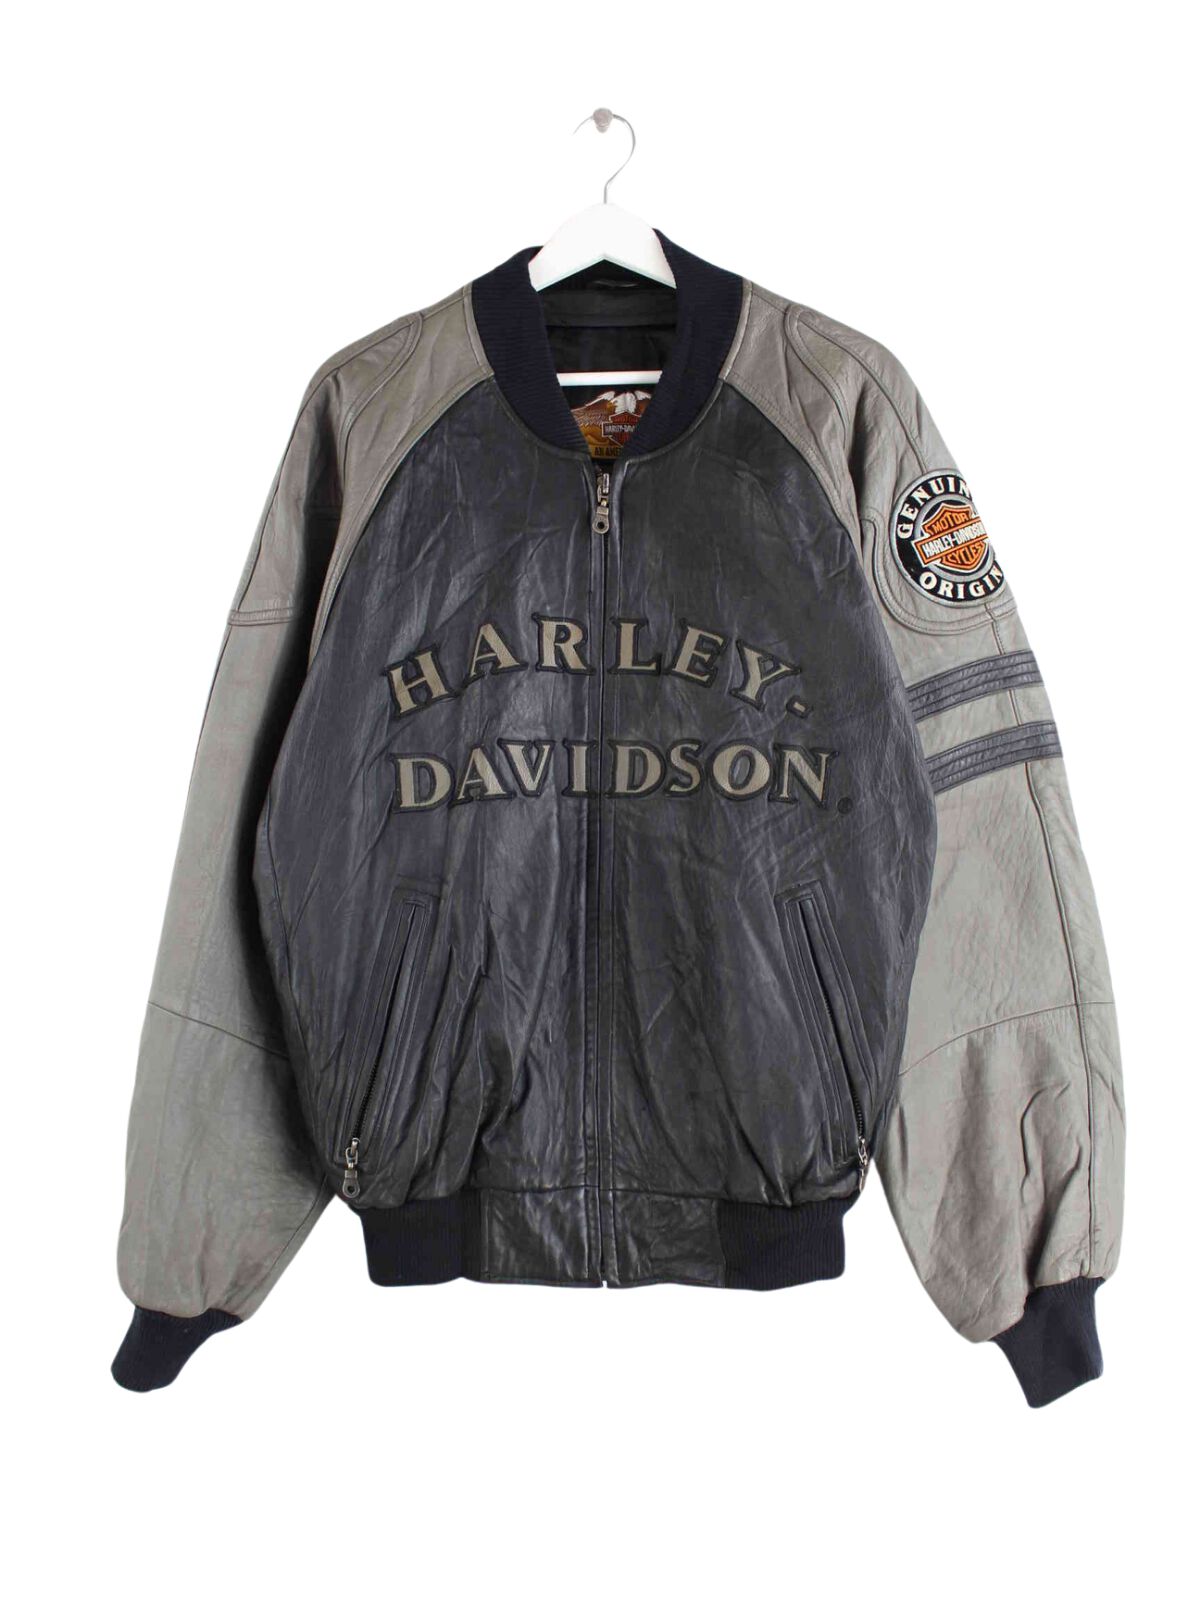 Harley Davidson 90s Vintage Embroidered Jacke Schwarz L (front image)